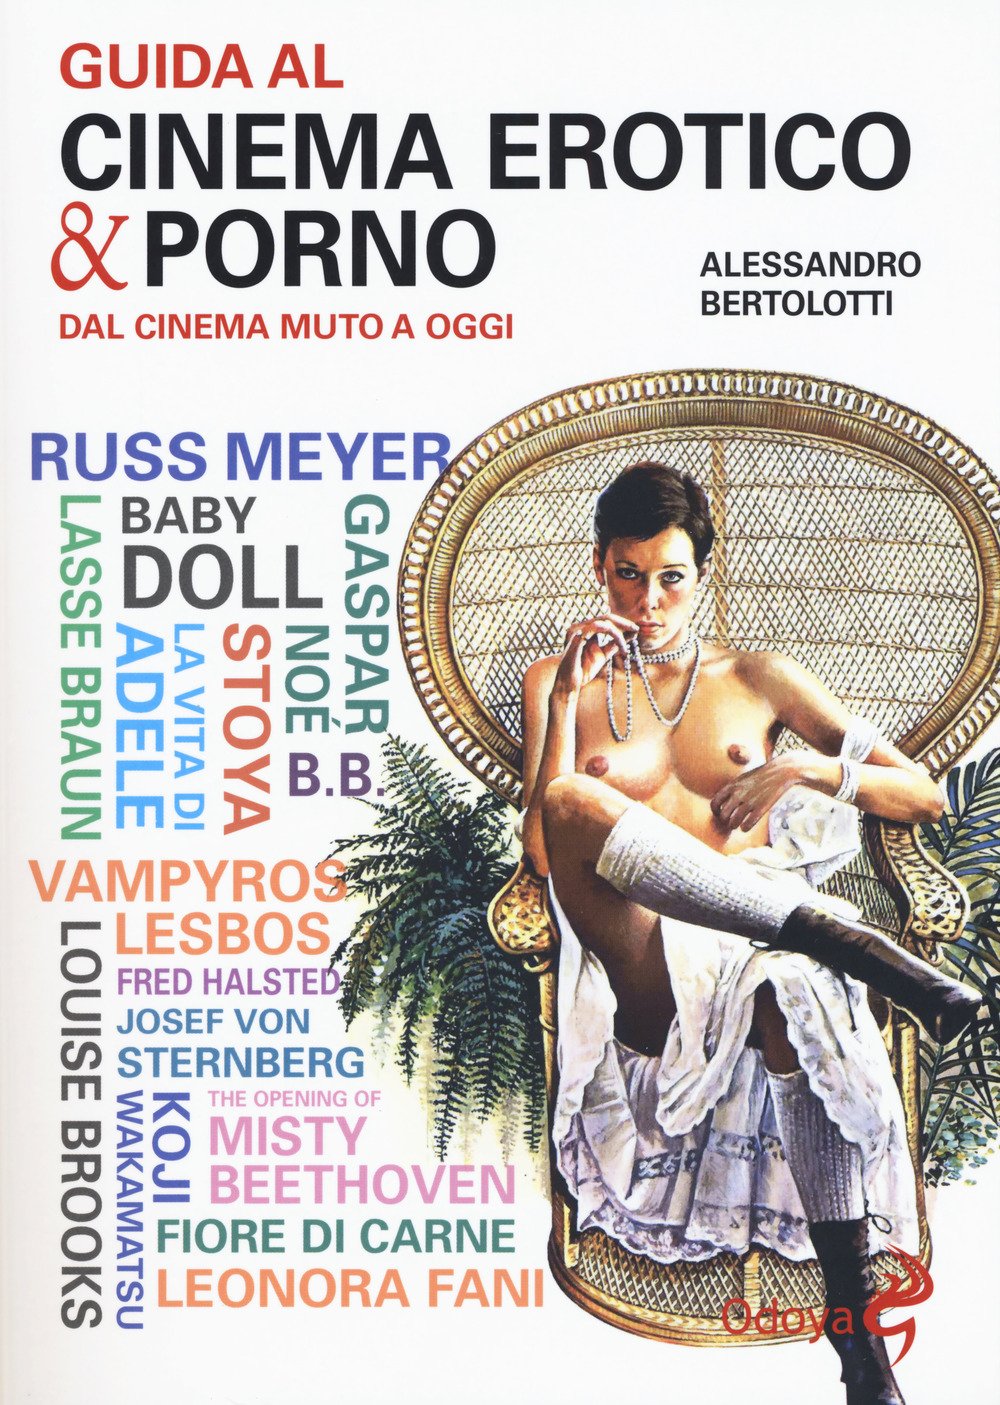 Libri Alessandro Bertolotti - Guida Al Cinema Erotico & Porno. Dal Cinema Muto A Oggi NUOVO SIGILLATO, EDIZIONE DEL 02/03/2017 SUBITO DISPONIBILE